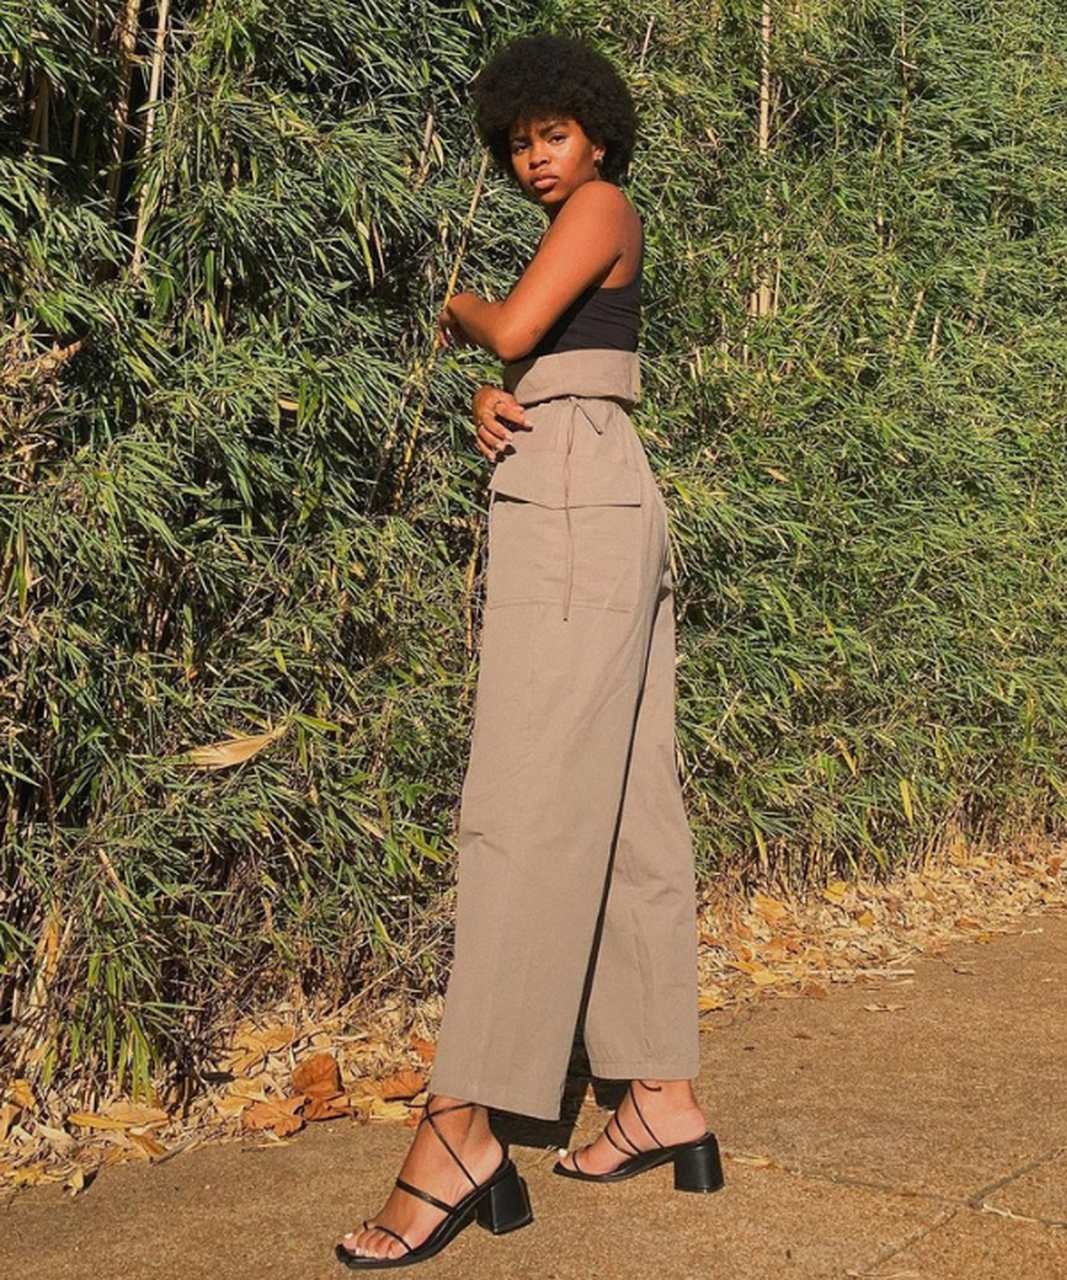 Samantha E. - blusa preta e calça pantacourt com sandália preta de salto baixo - sandálias confortáveis - Verão - perto de plantas - https://stealthelook.com.br